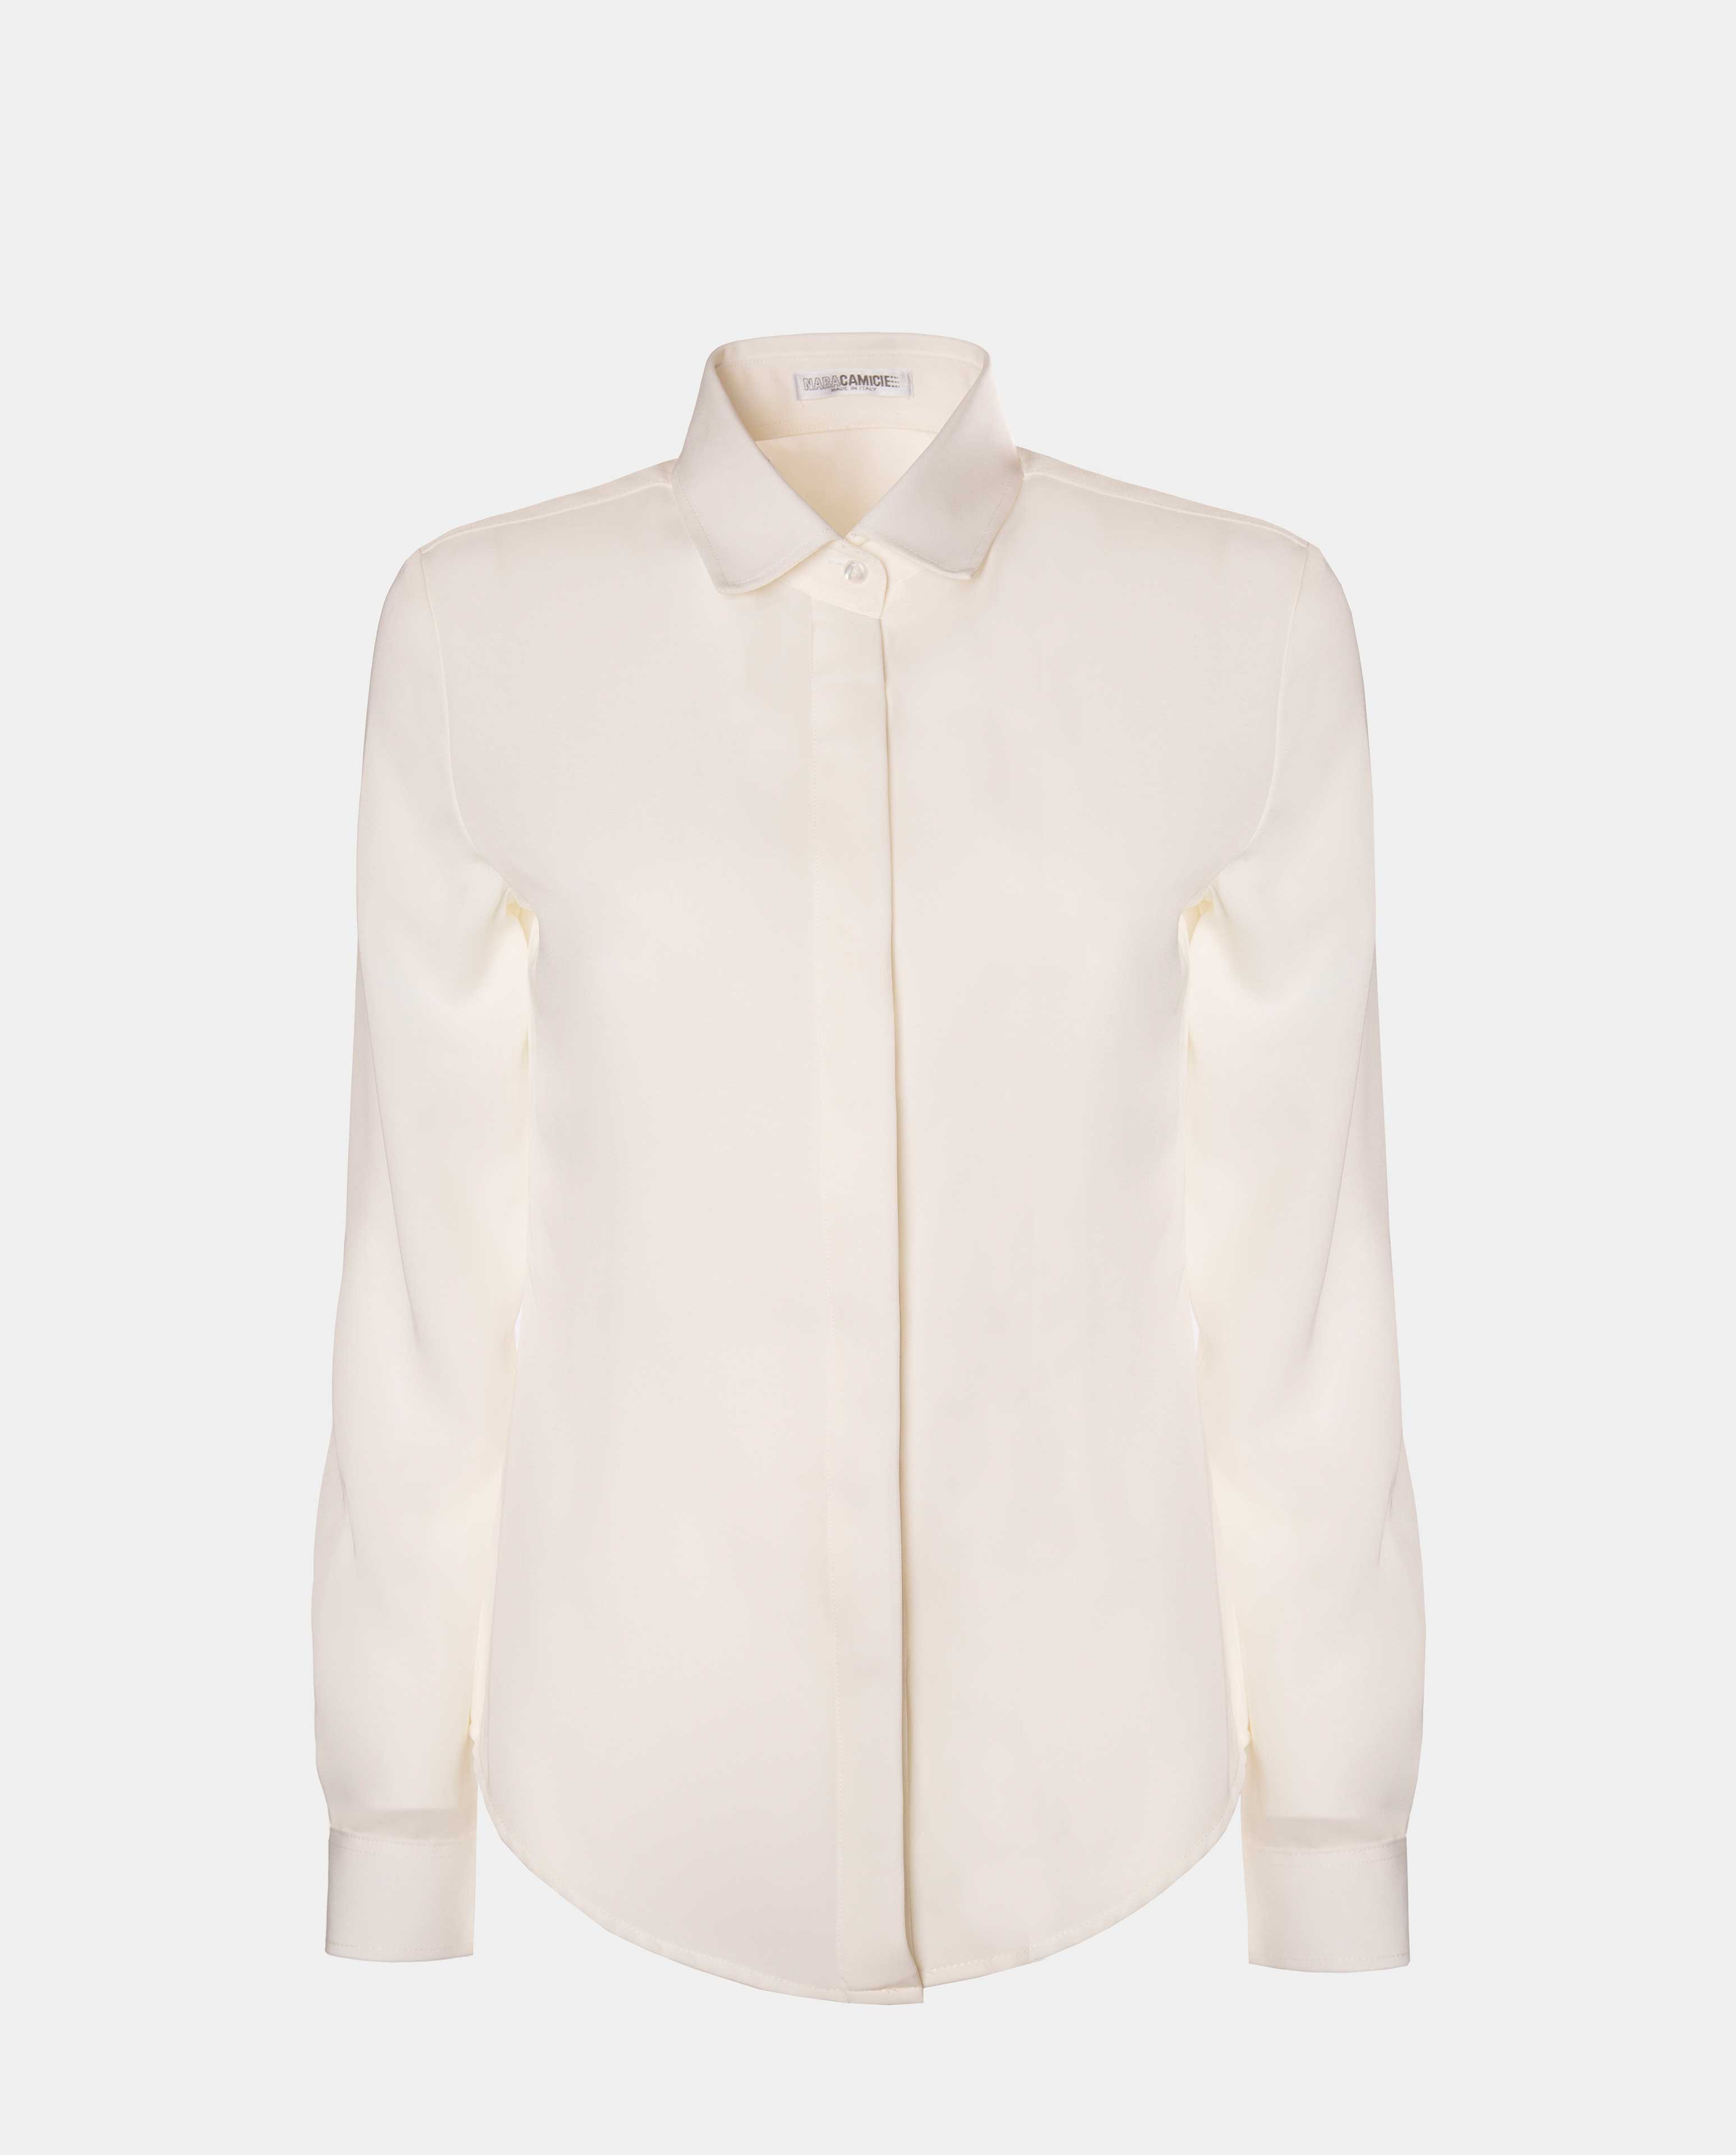 Kamala white shirt - SHIRT - NaraMilano